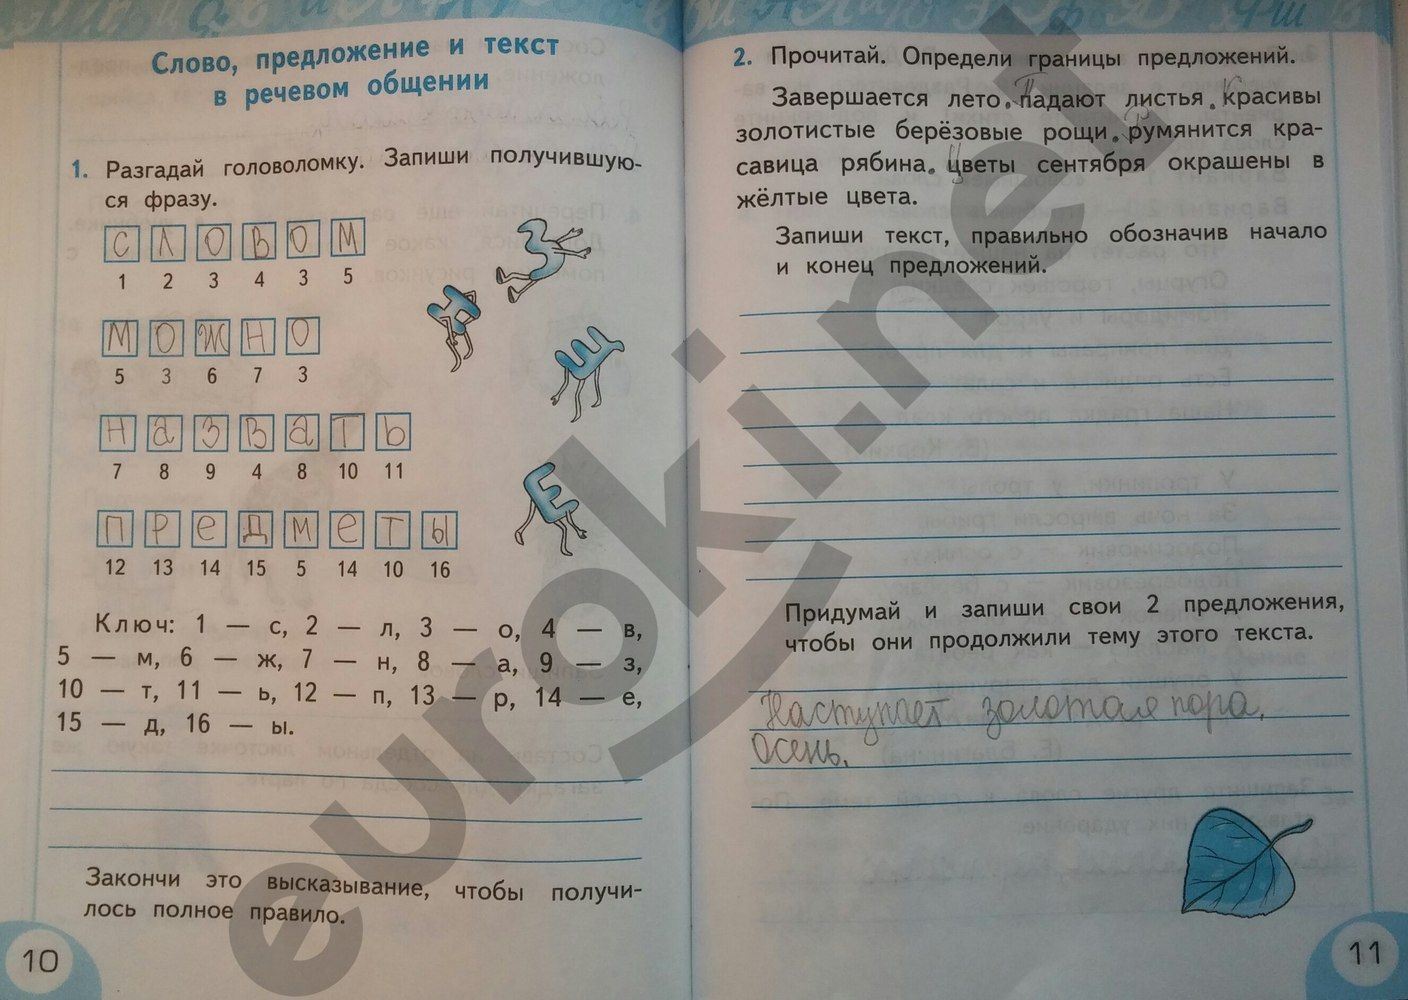 ГДЗ Русский язык 2 класс - стр. 10-11